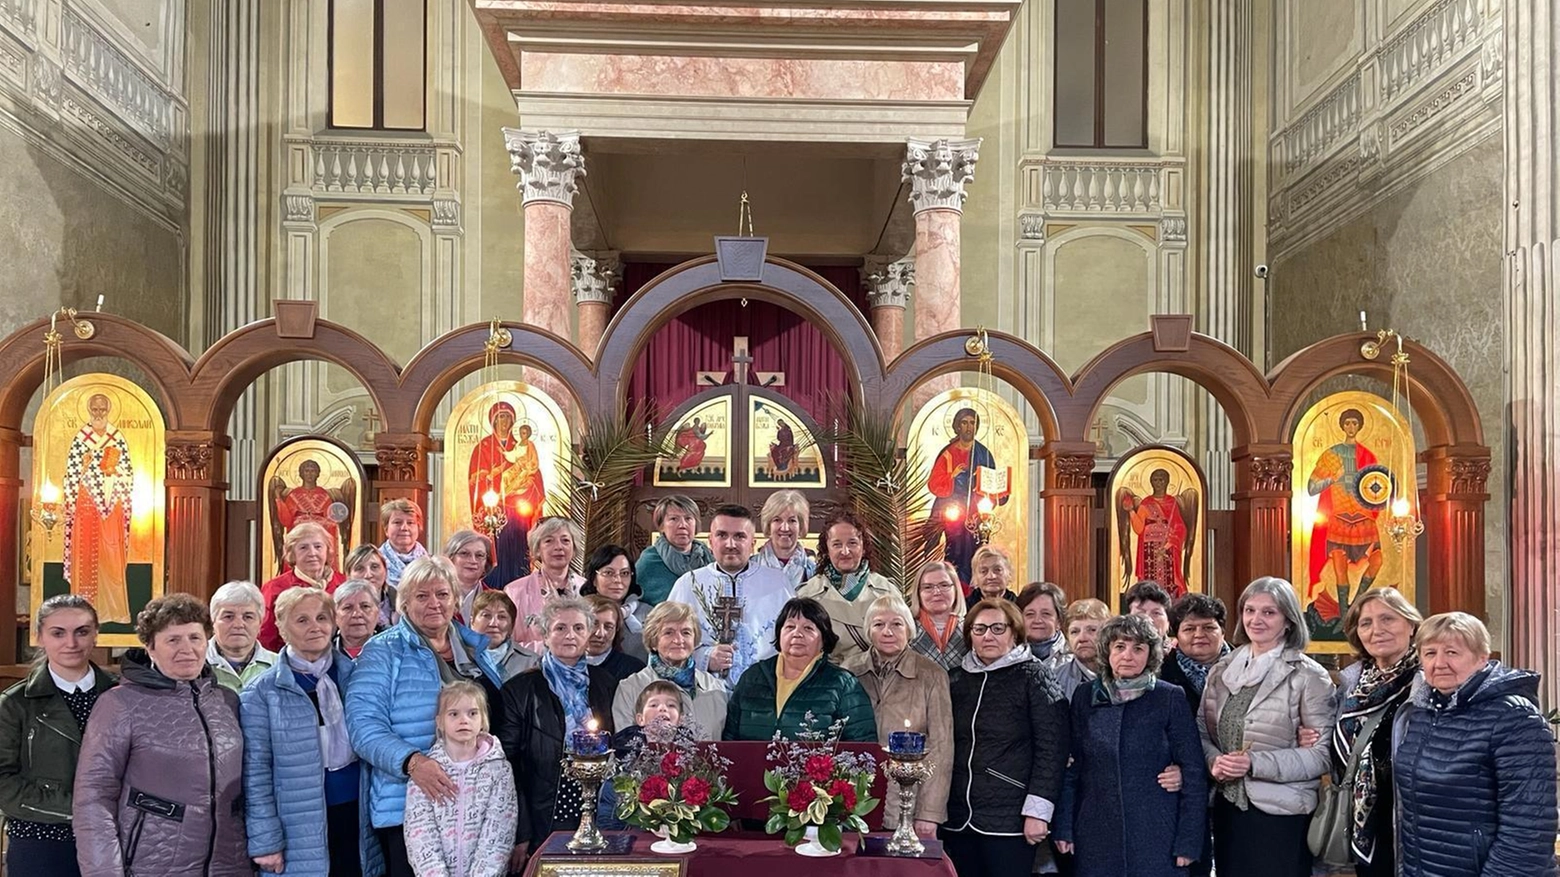 Momenti di condivisione. La Pasqua degli ucraini, la Via Crucis e il pensiero alla patria martoriata